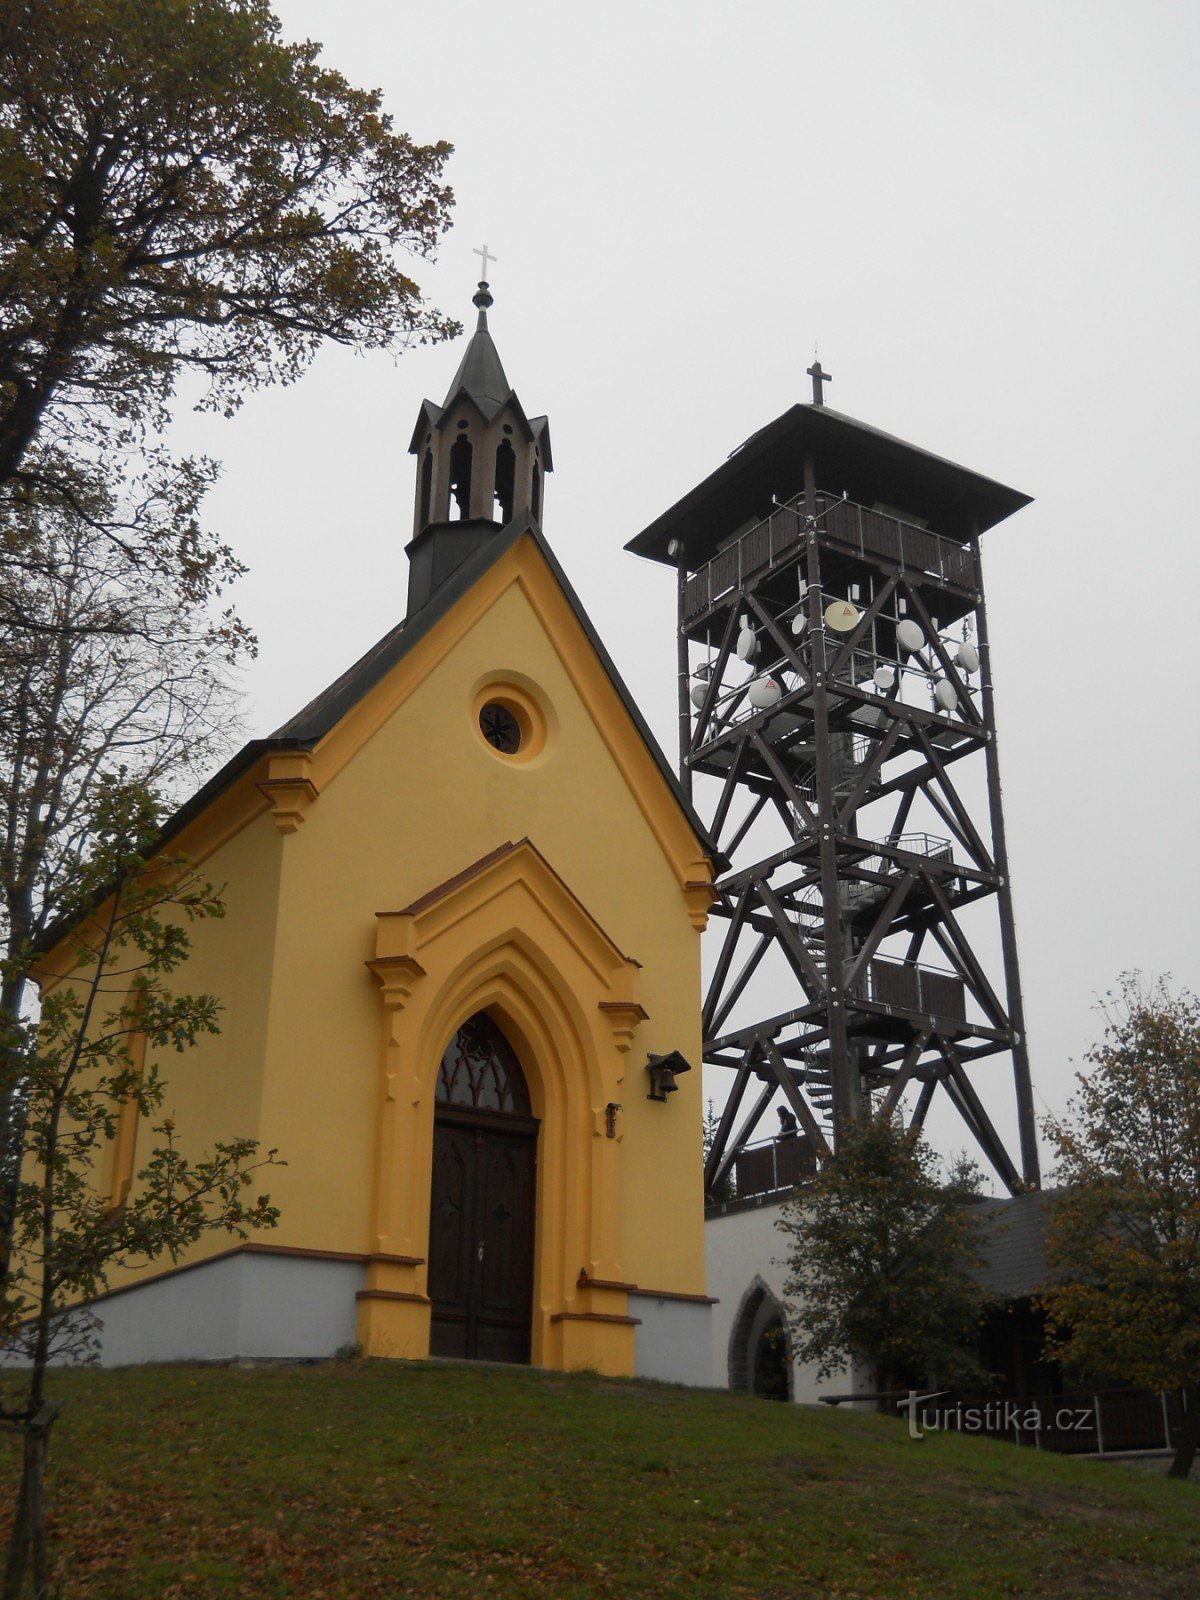 Dlažov - tháp quan sát Markéta và nhà nguyện St. Margaret